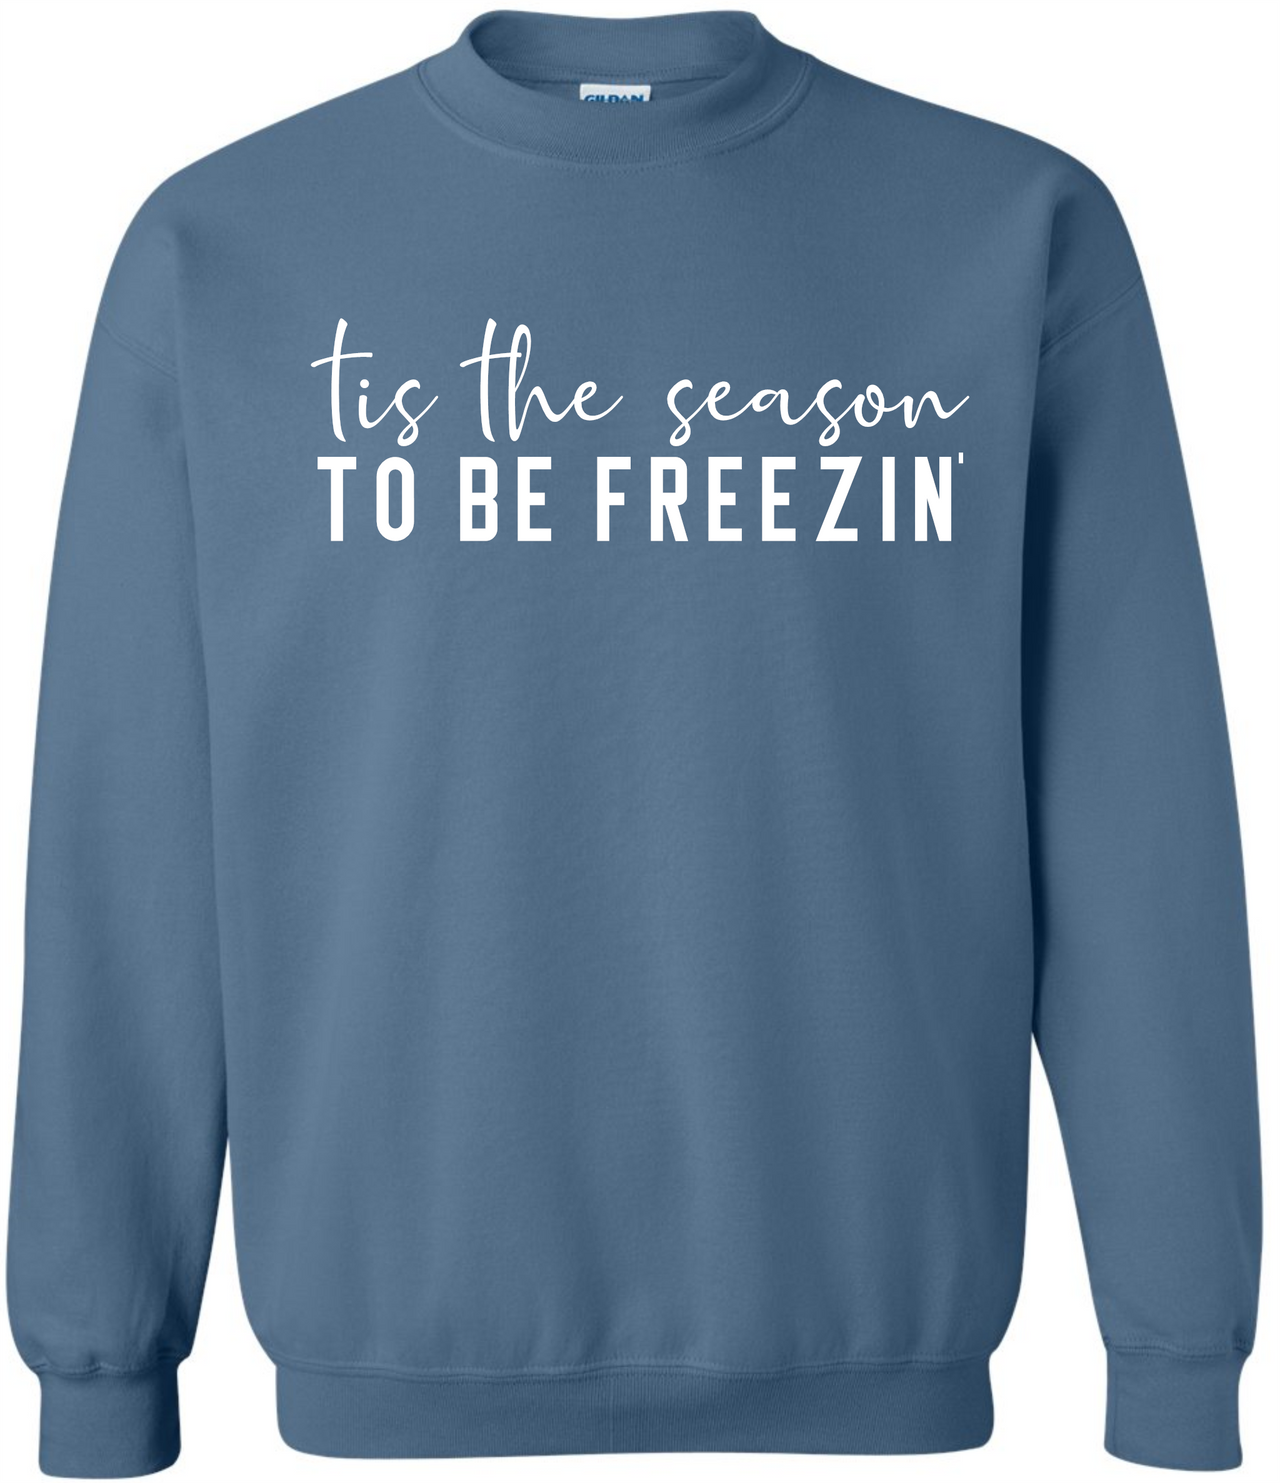 Freezin' Crew Sweater